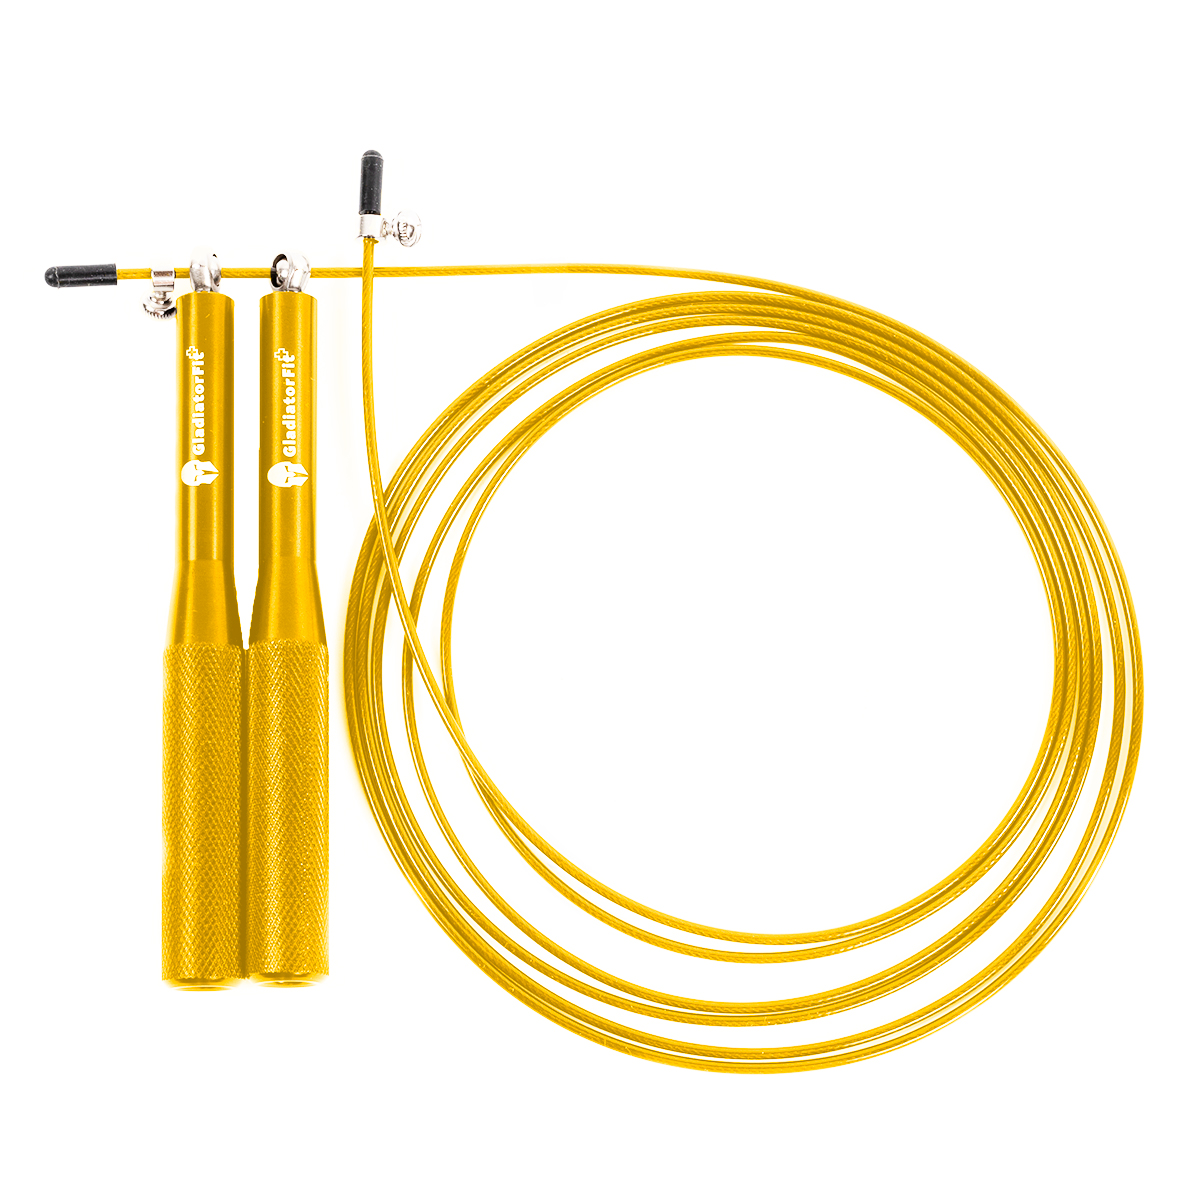 Speed Rope" Corda De Saltar Em Alumínio Ajustável De 3 M + Saco | Dourado